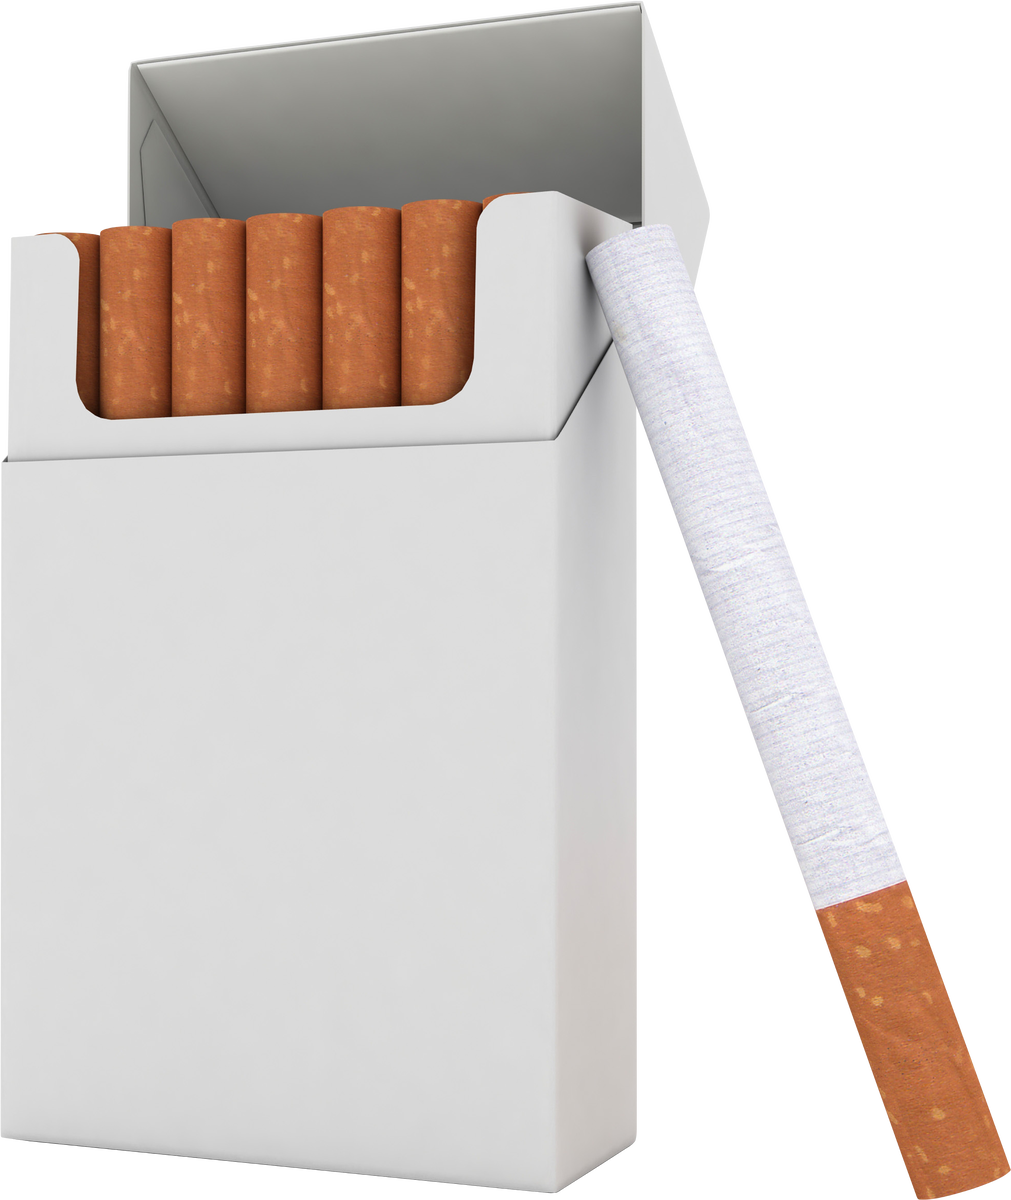 Сигареты. Пачка сигарет. Сигарета на белом фоне. Табачные изделия сигареты